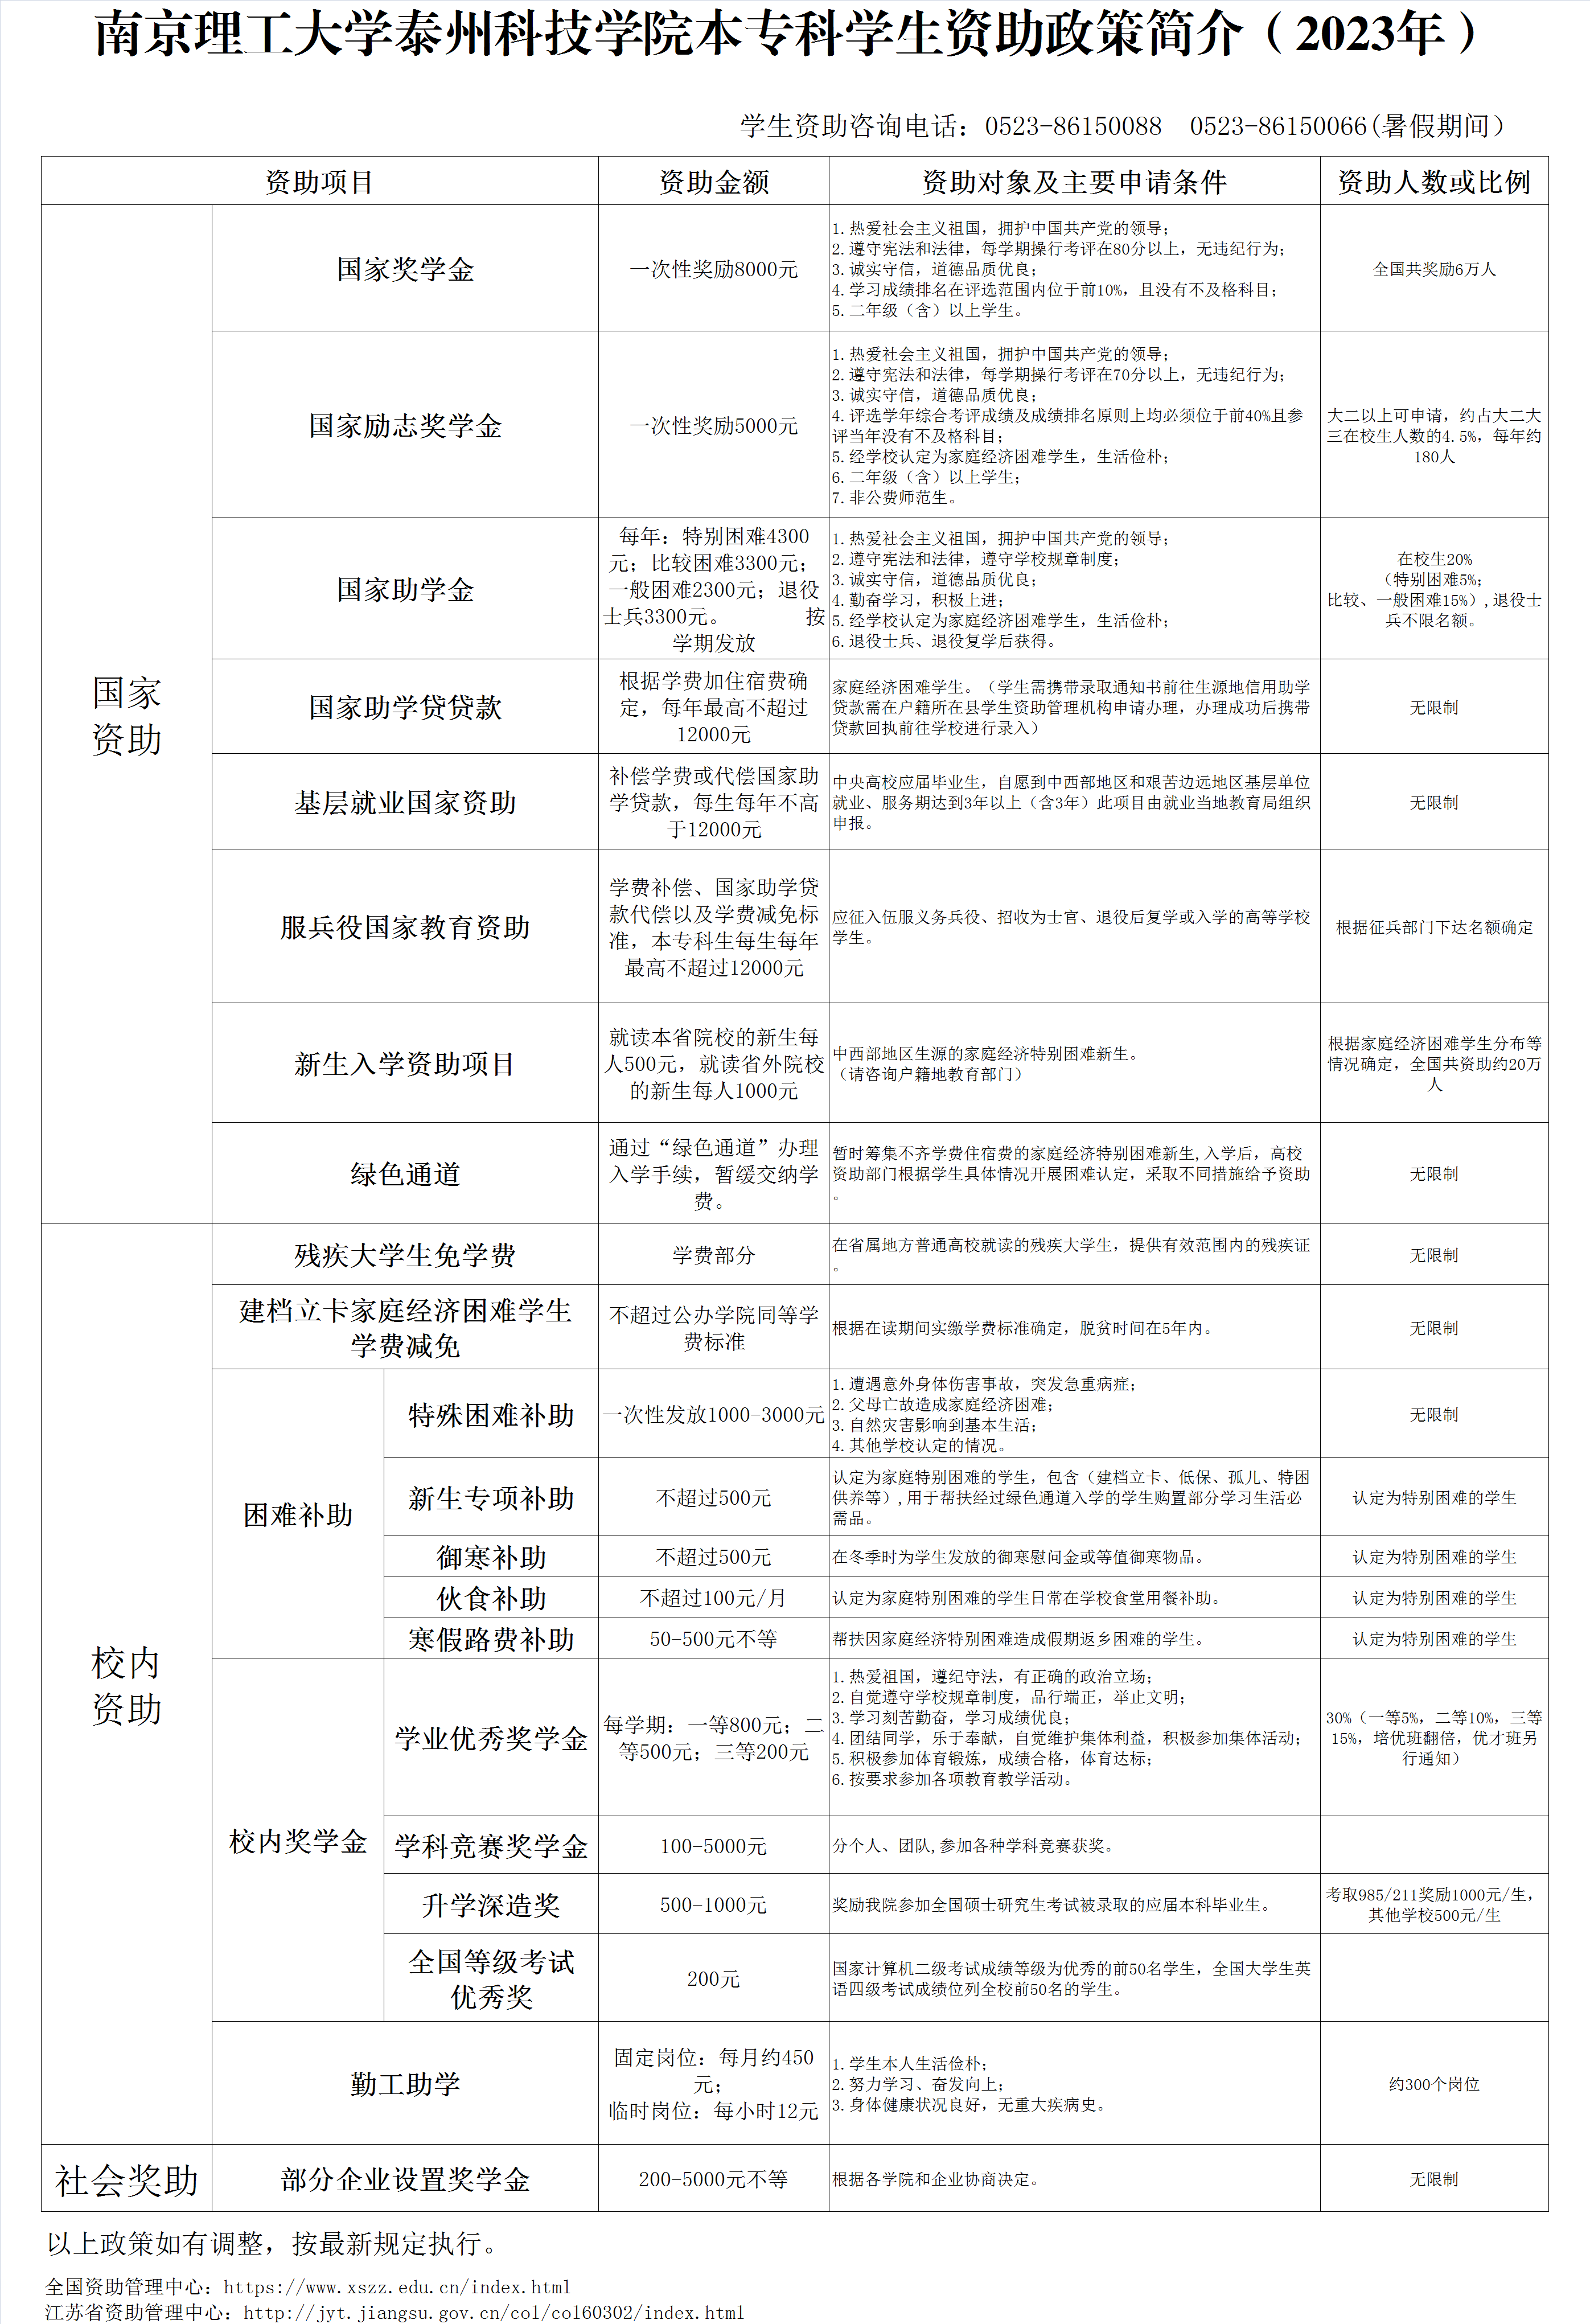 南京理工大学泰州科技学院学生资助政策简介（2023年）.png